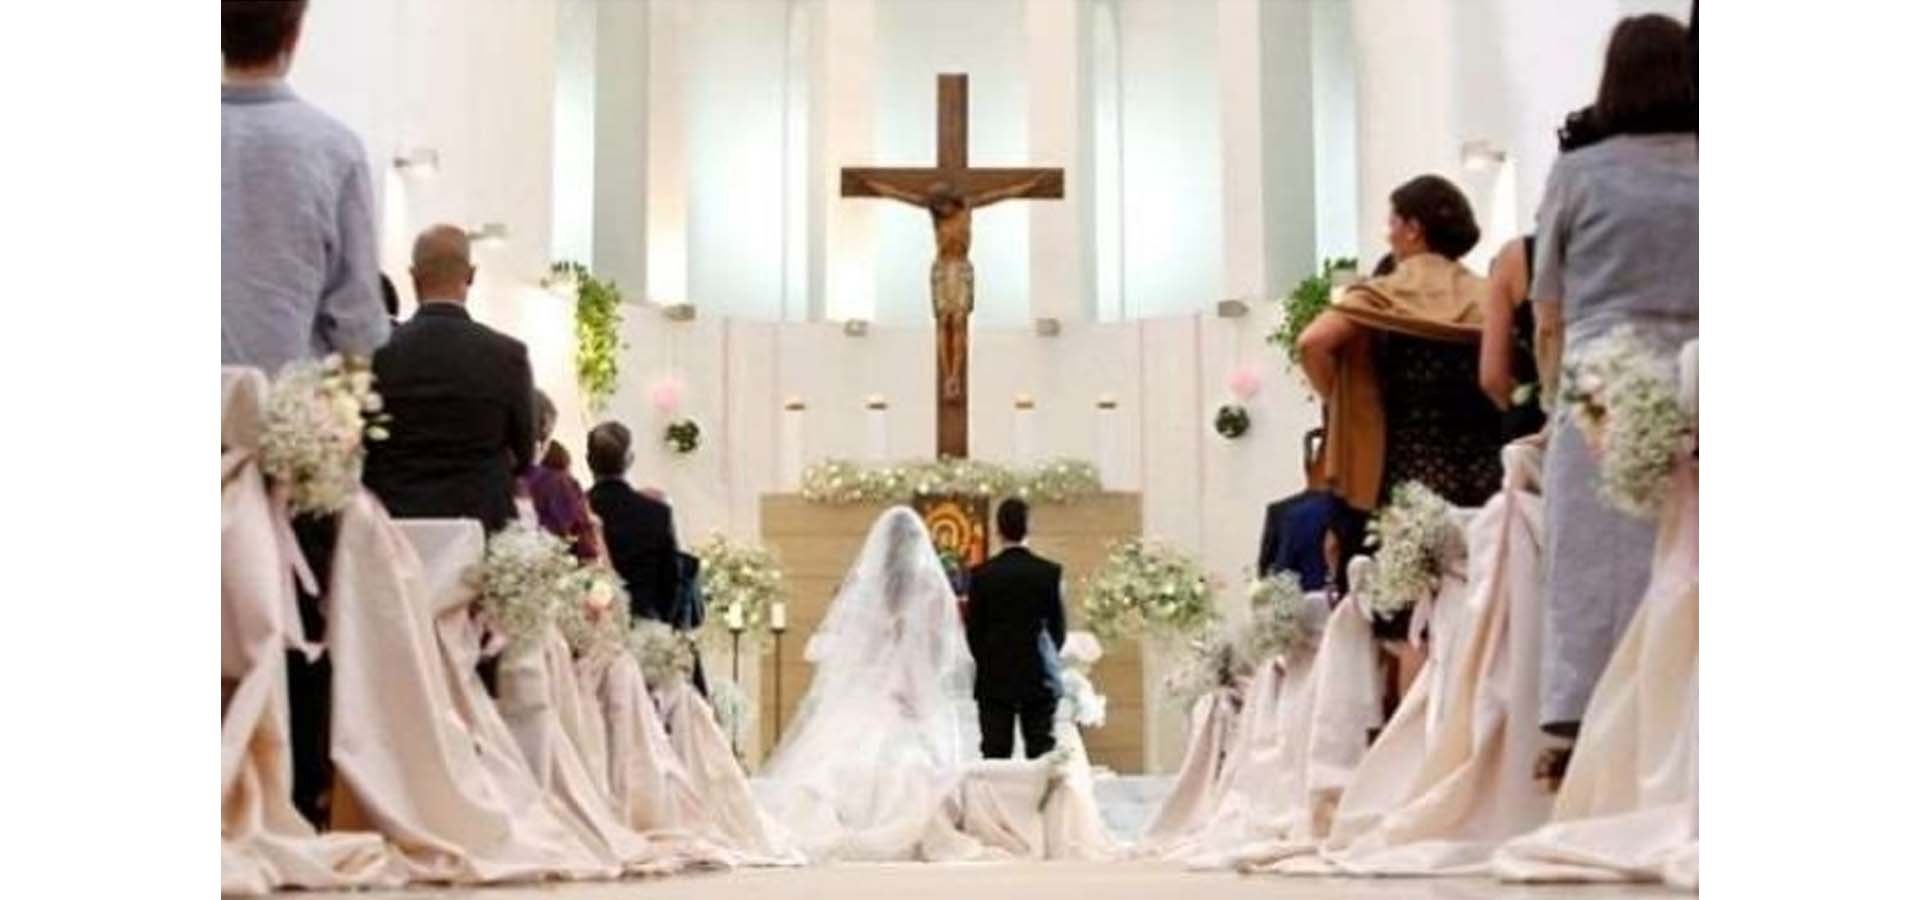 Foto Pernikahan Di Gereja - KibrisPDR